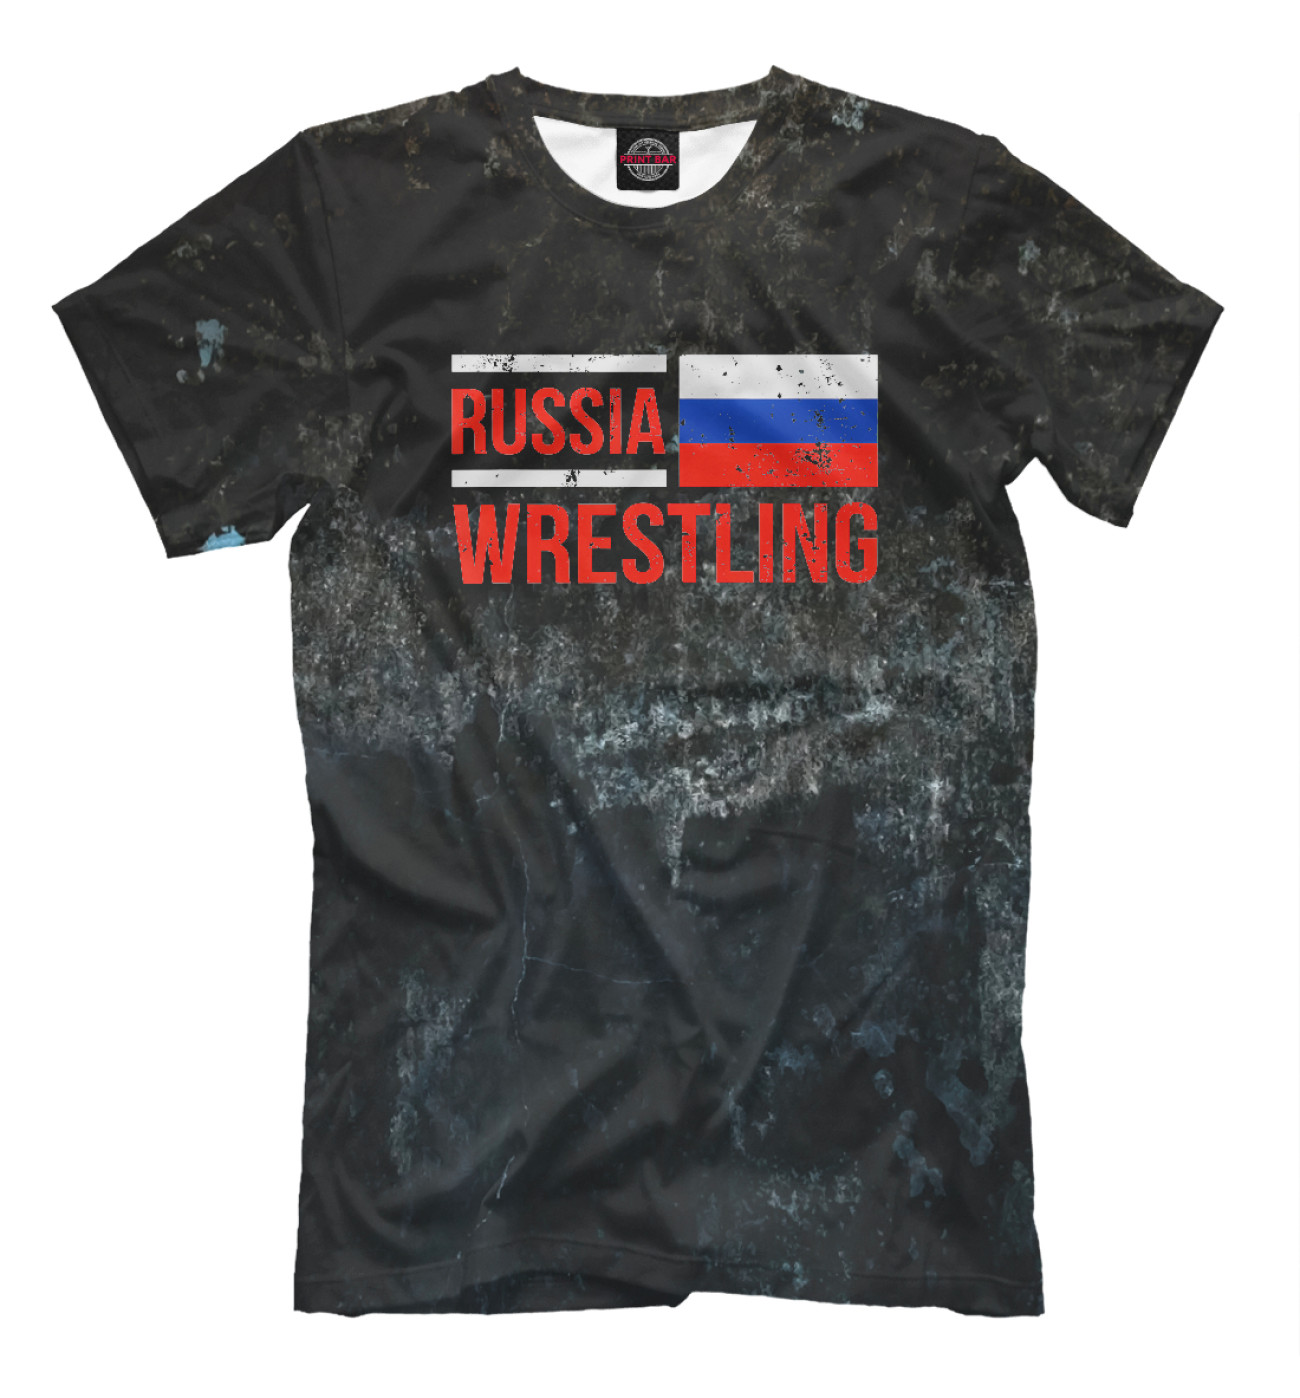 Мужская Футболка Russia Wrestling, артикул: SMB-614160-fut-2